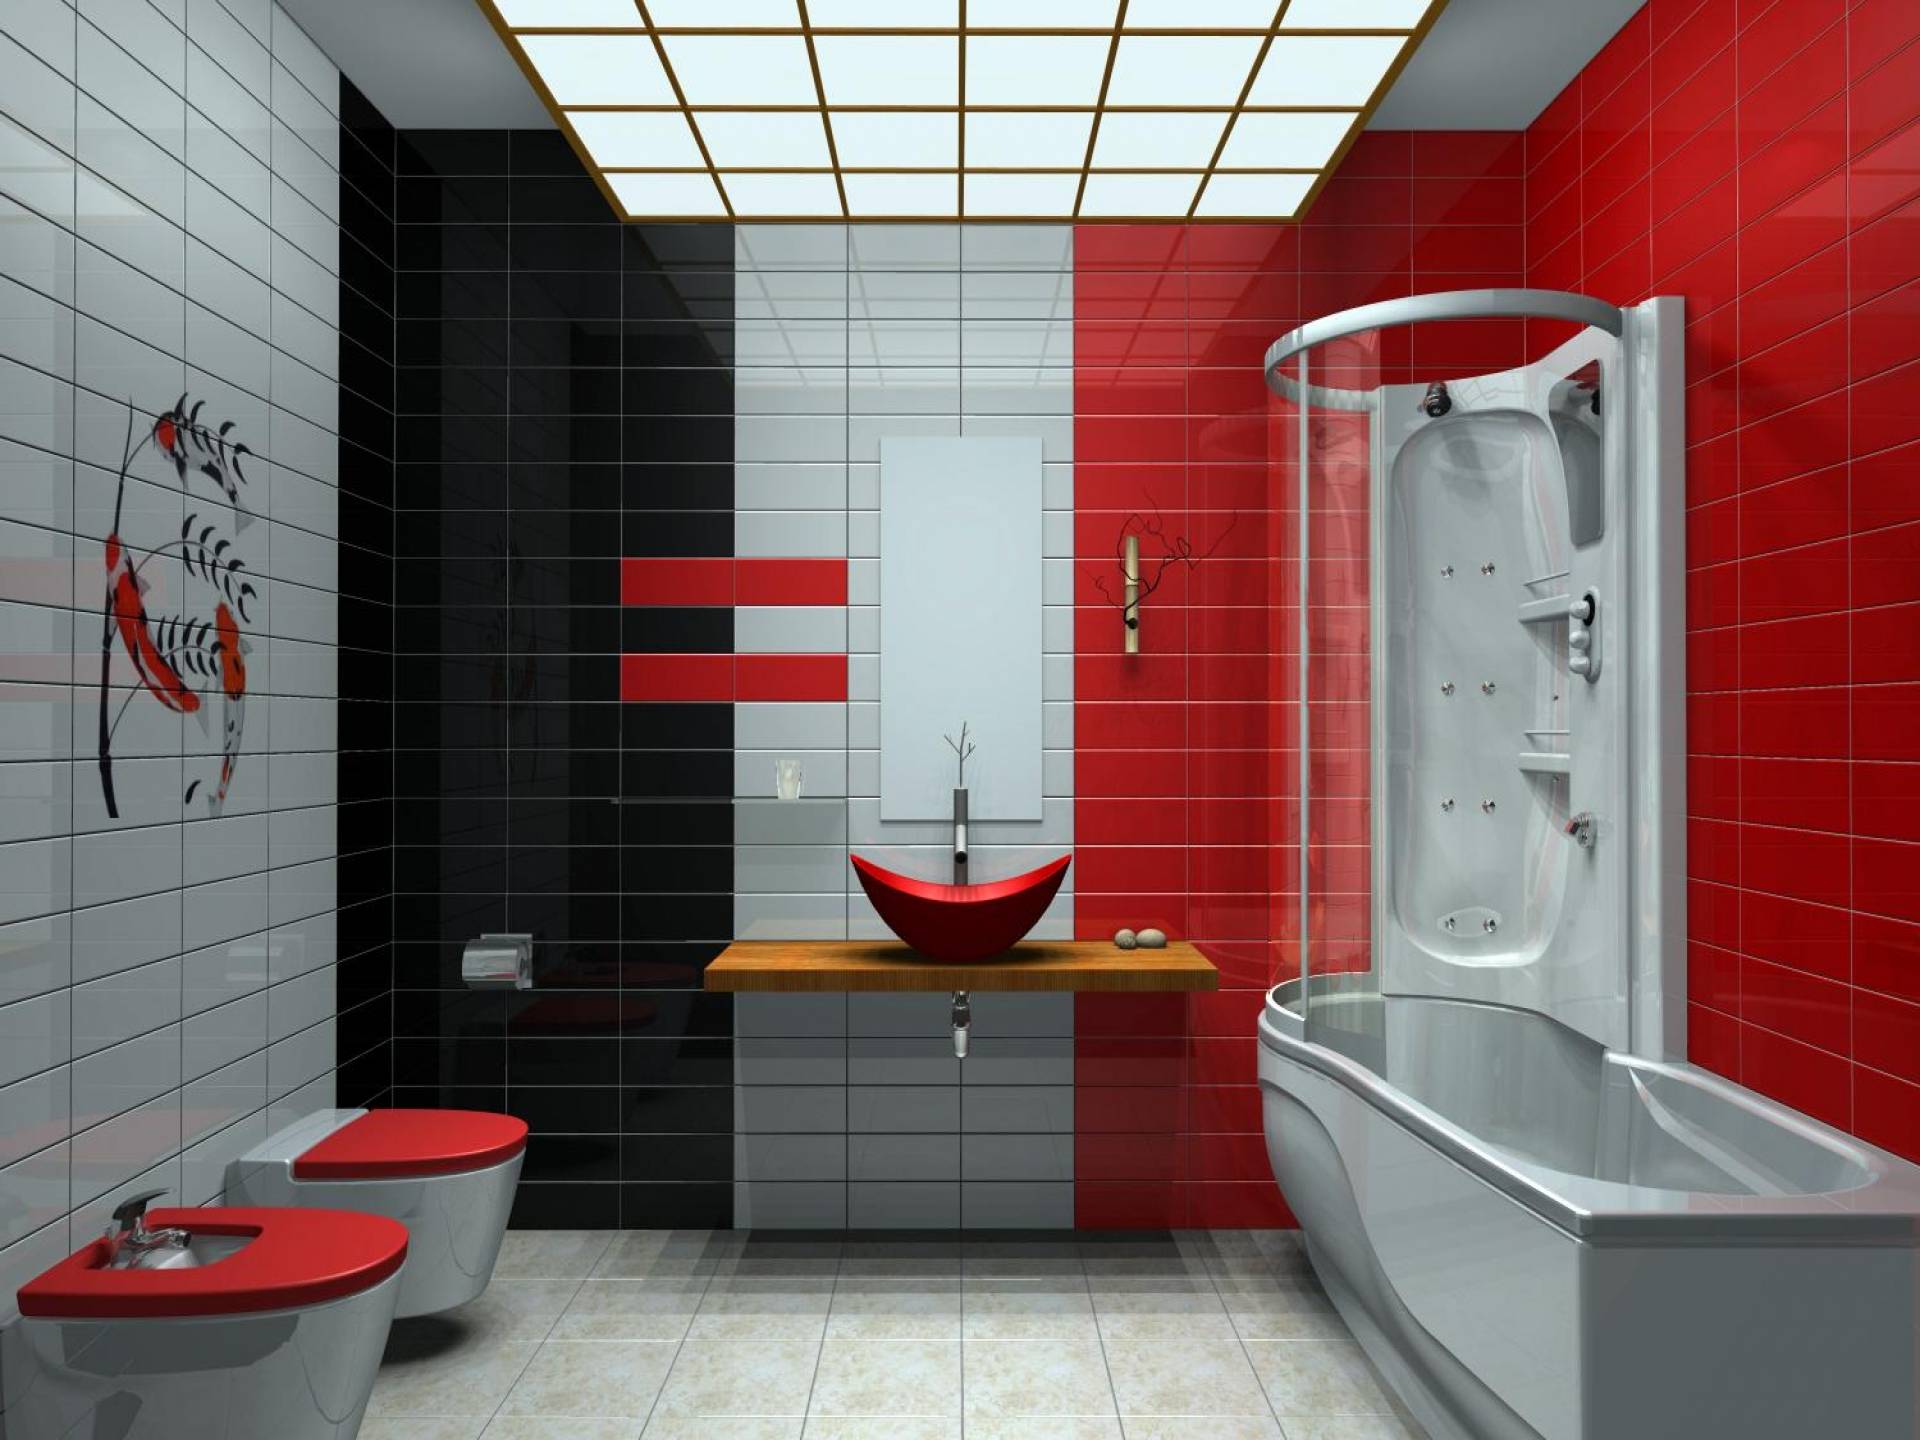 Дизайн красной ванной